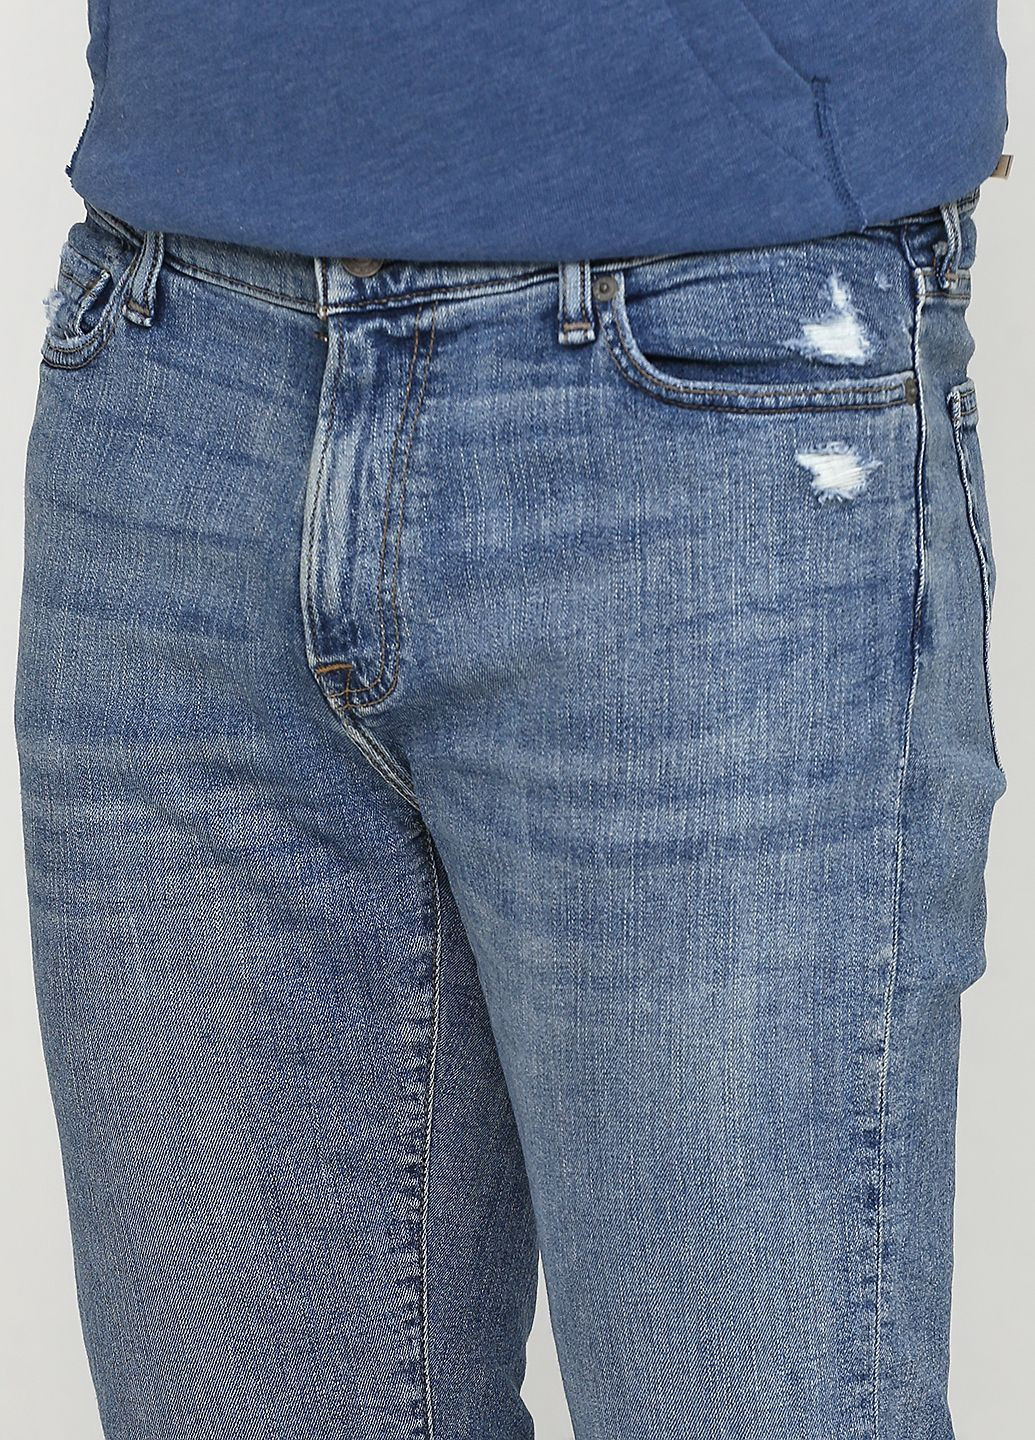 Светло-синие демисезонные джинсы athletic slim af4304m Abercrombie & Fitch